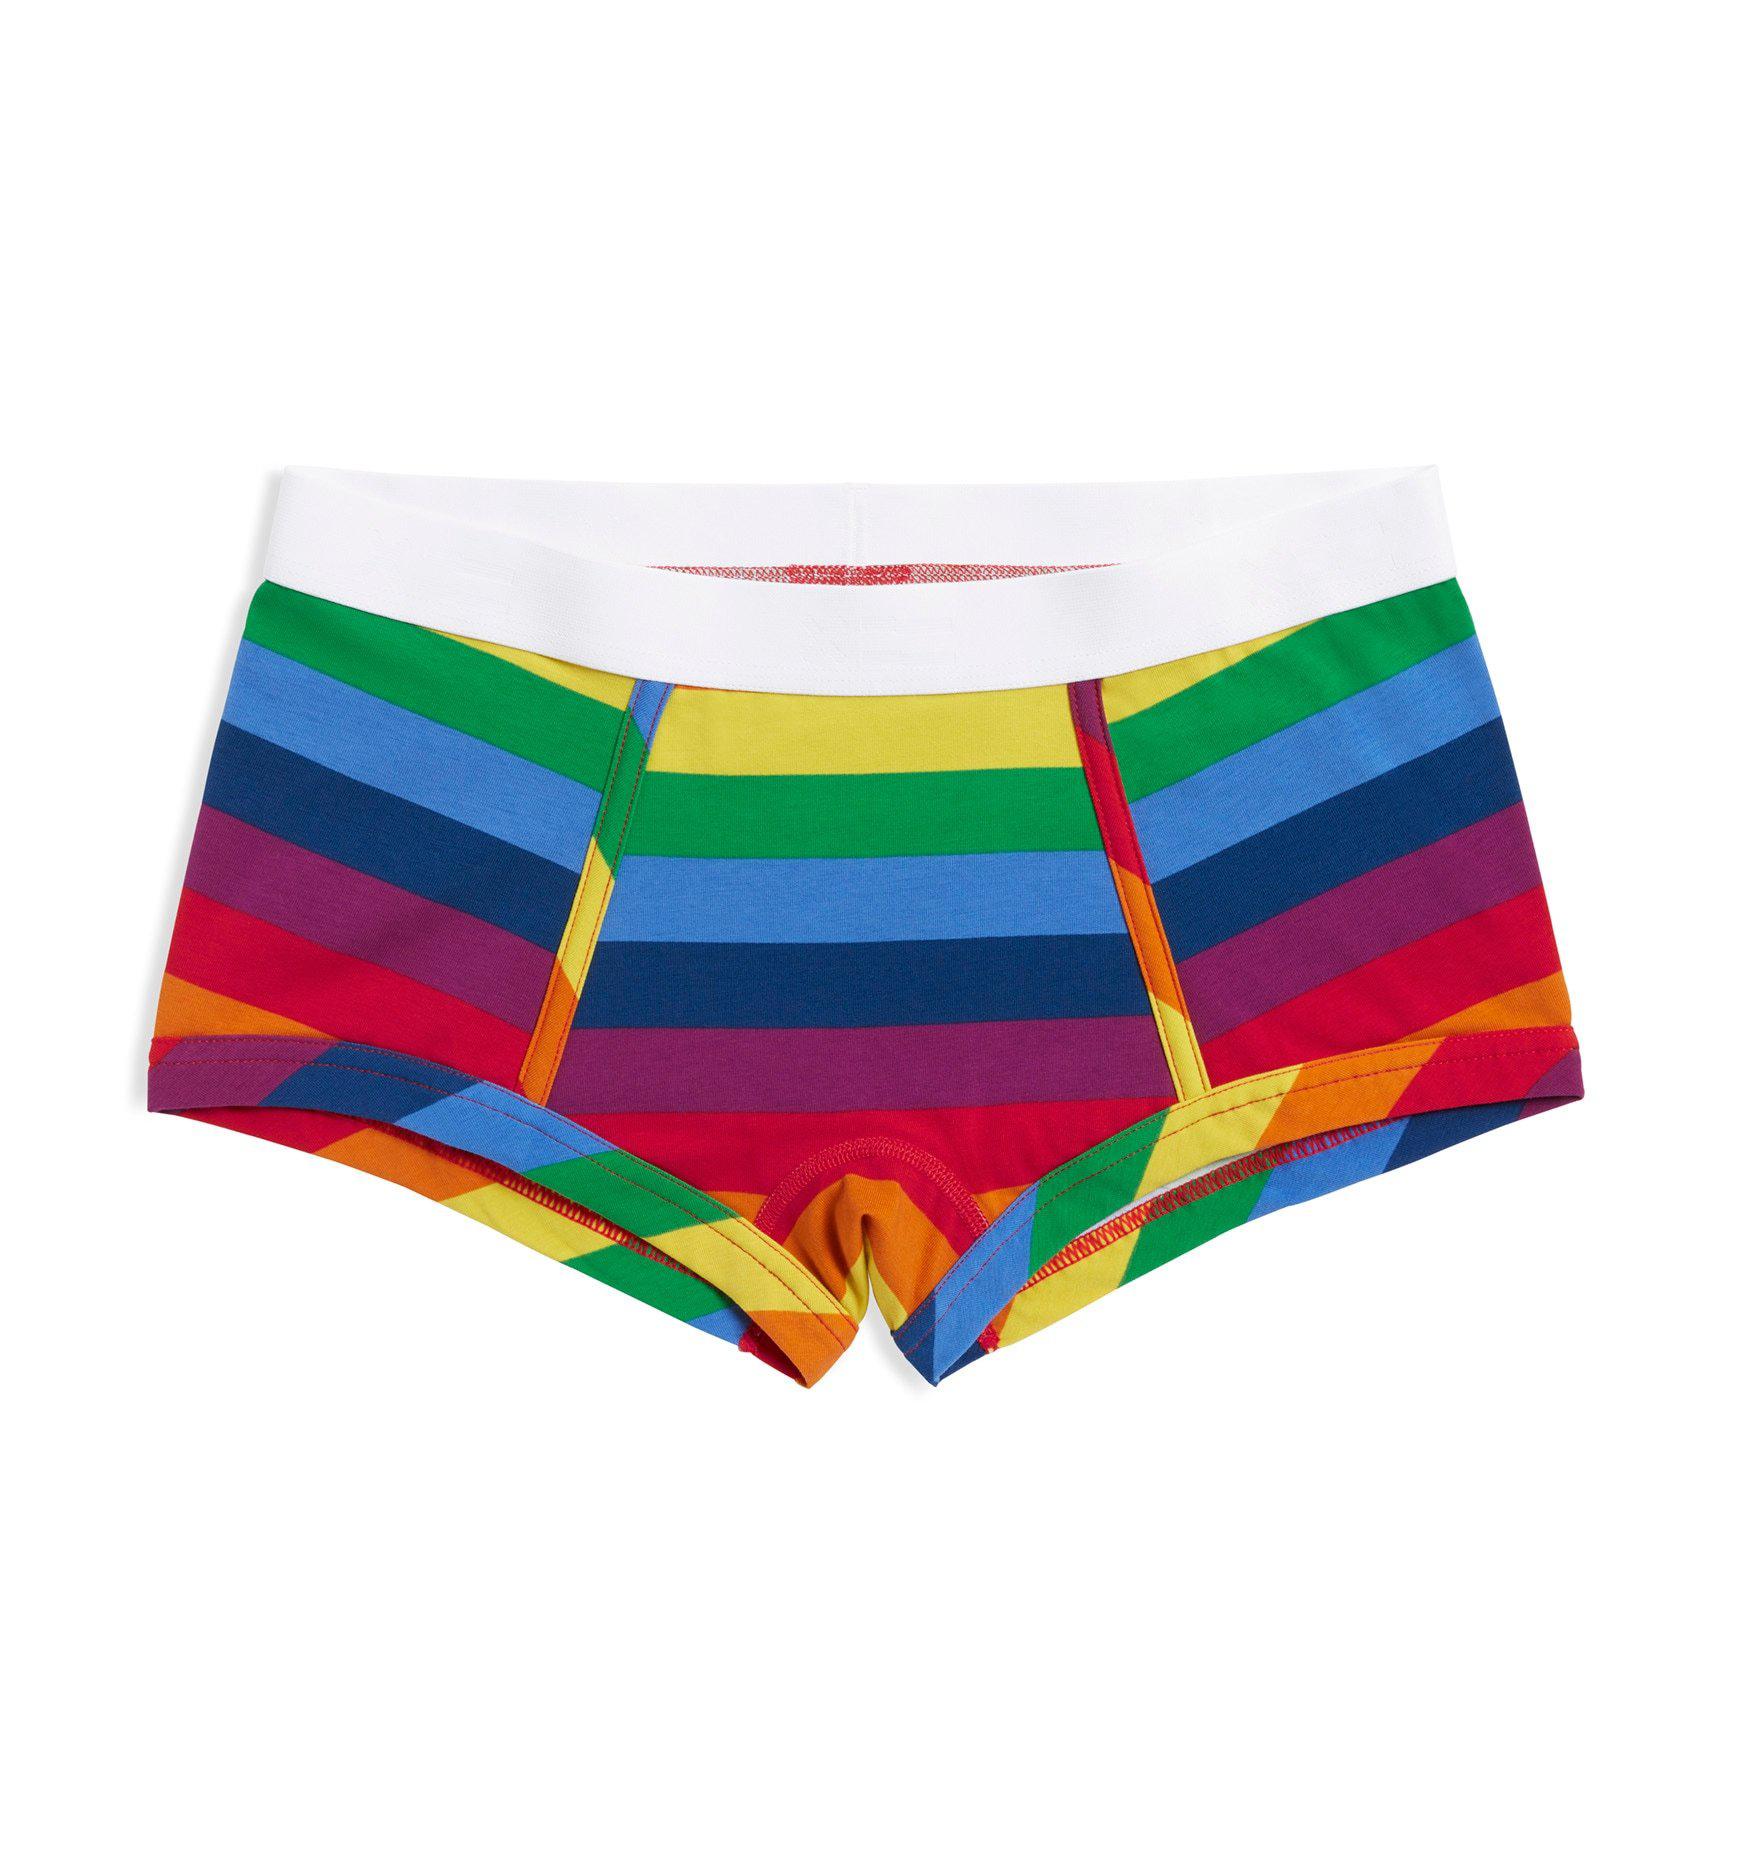 Tomboy X Target Pride 2022 Rainbow Underwear - Size S 195995627605